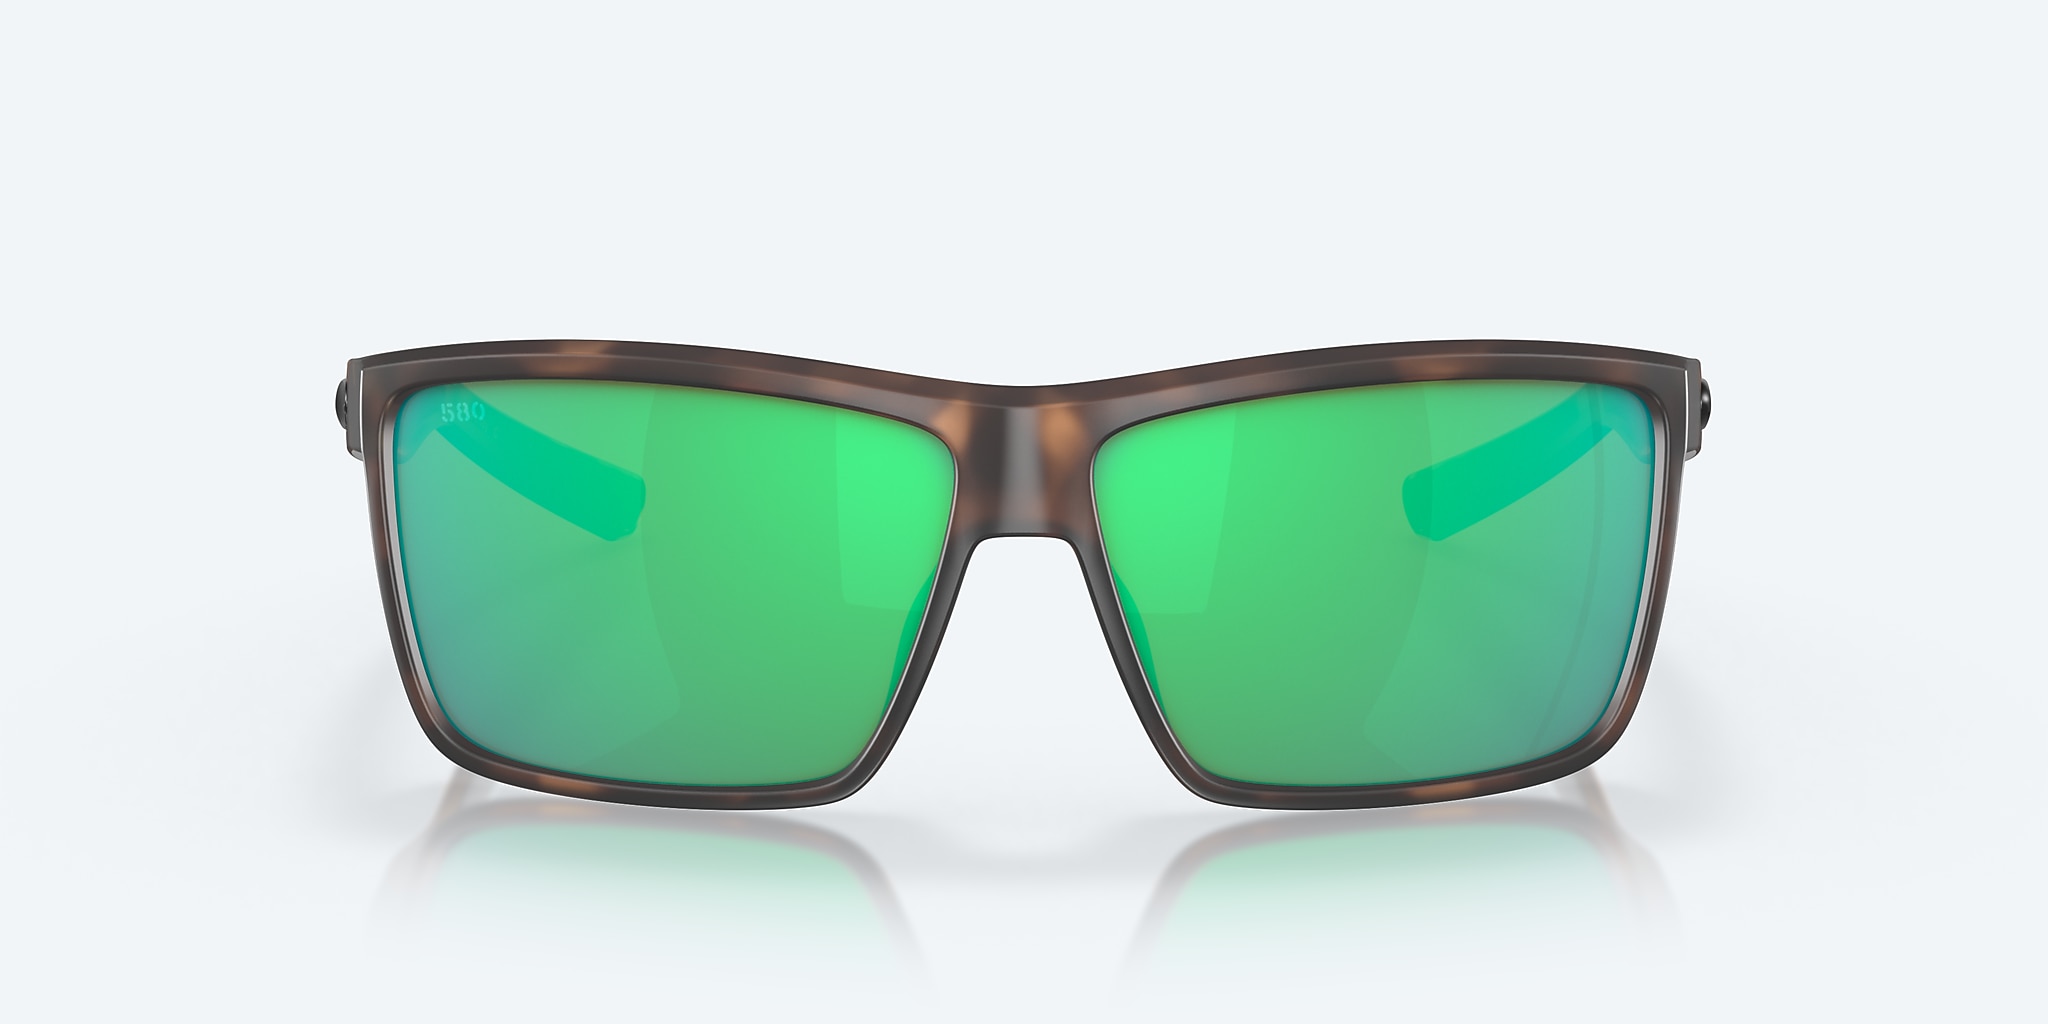 Estuche para gafas con colores personalizables - Estuche resistente para  gafas de sol incluye paño de limpieza de gafas gratis